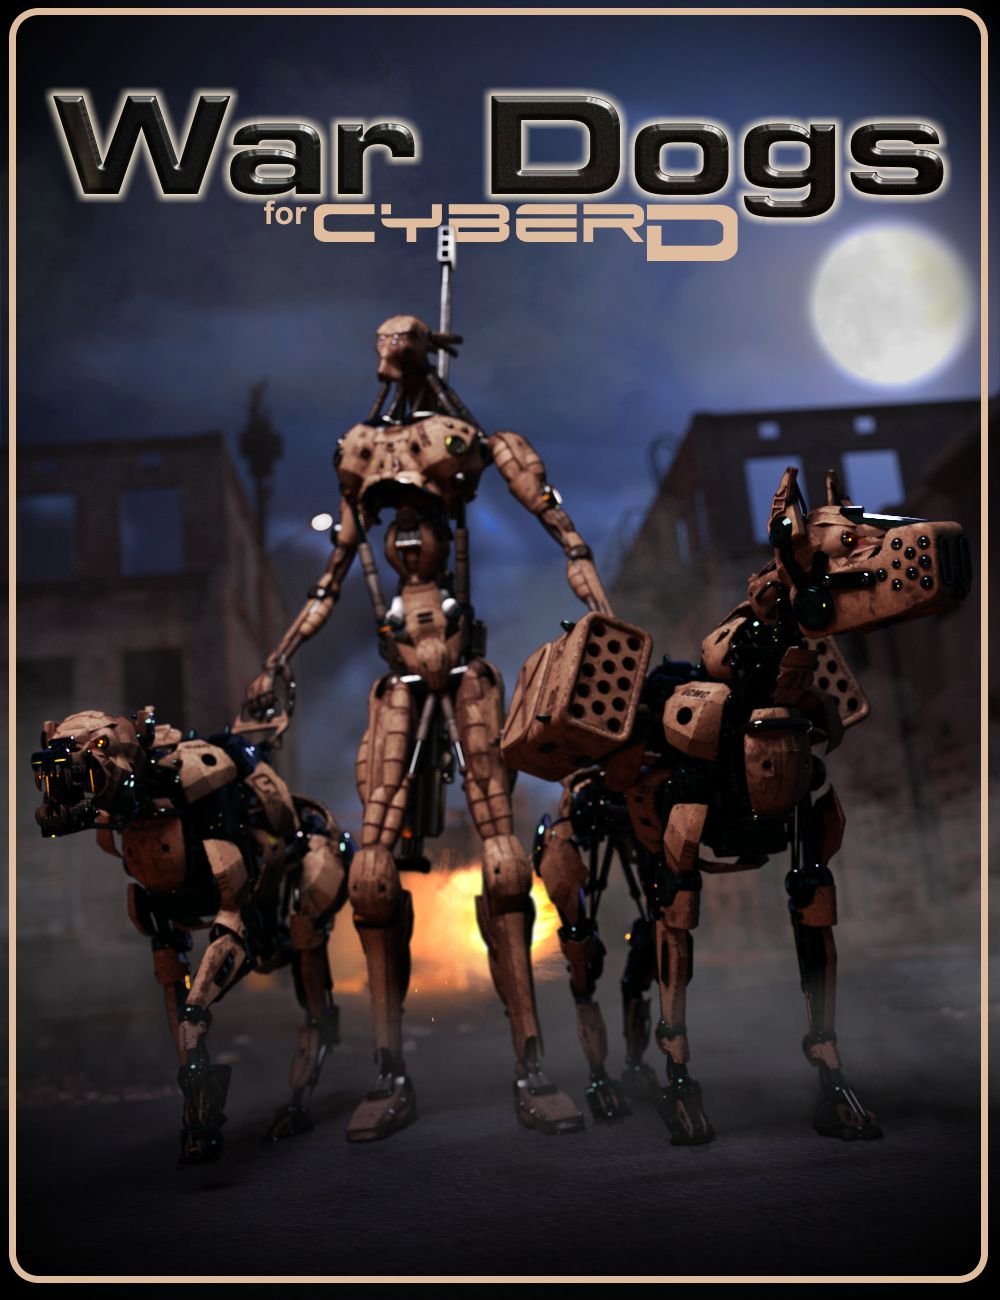 War Dogs for CyberD by: DzFire, 3D Models by Daz 3D